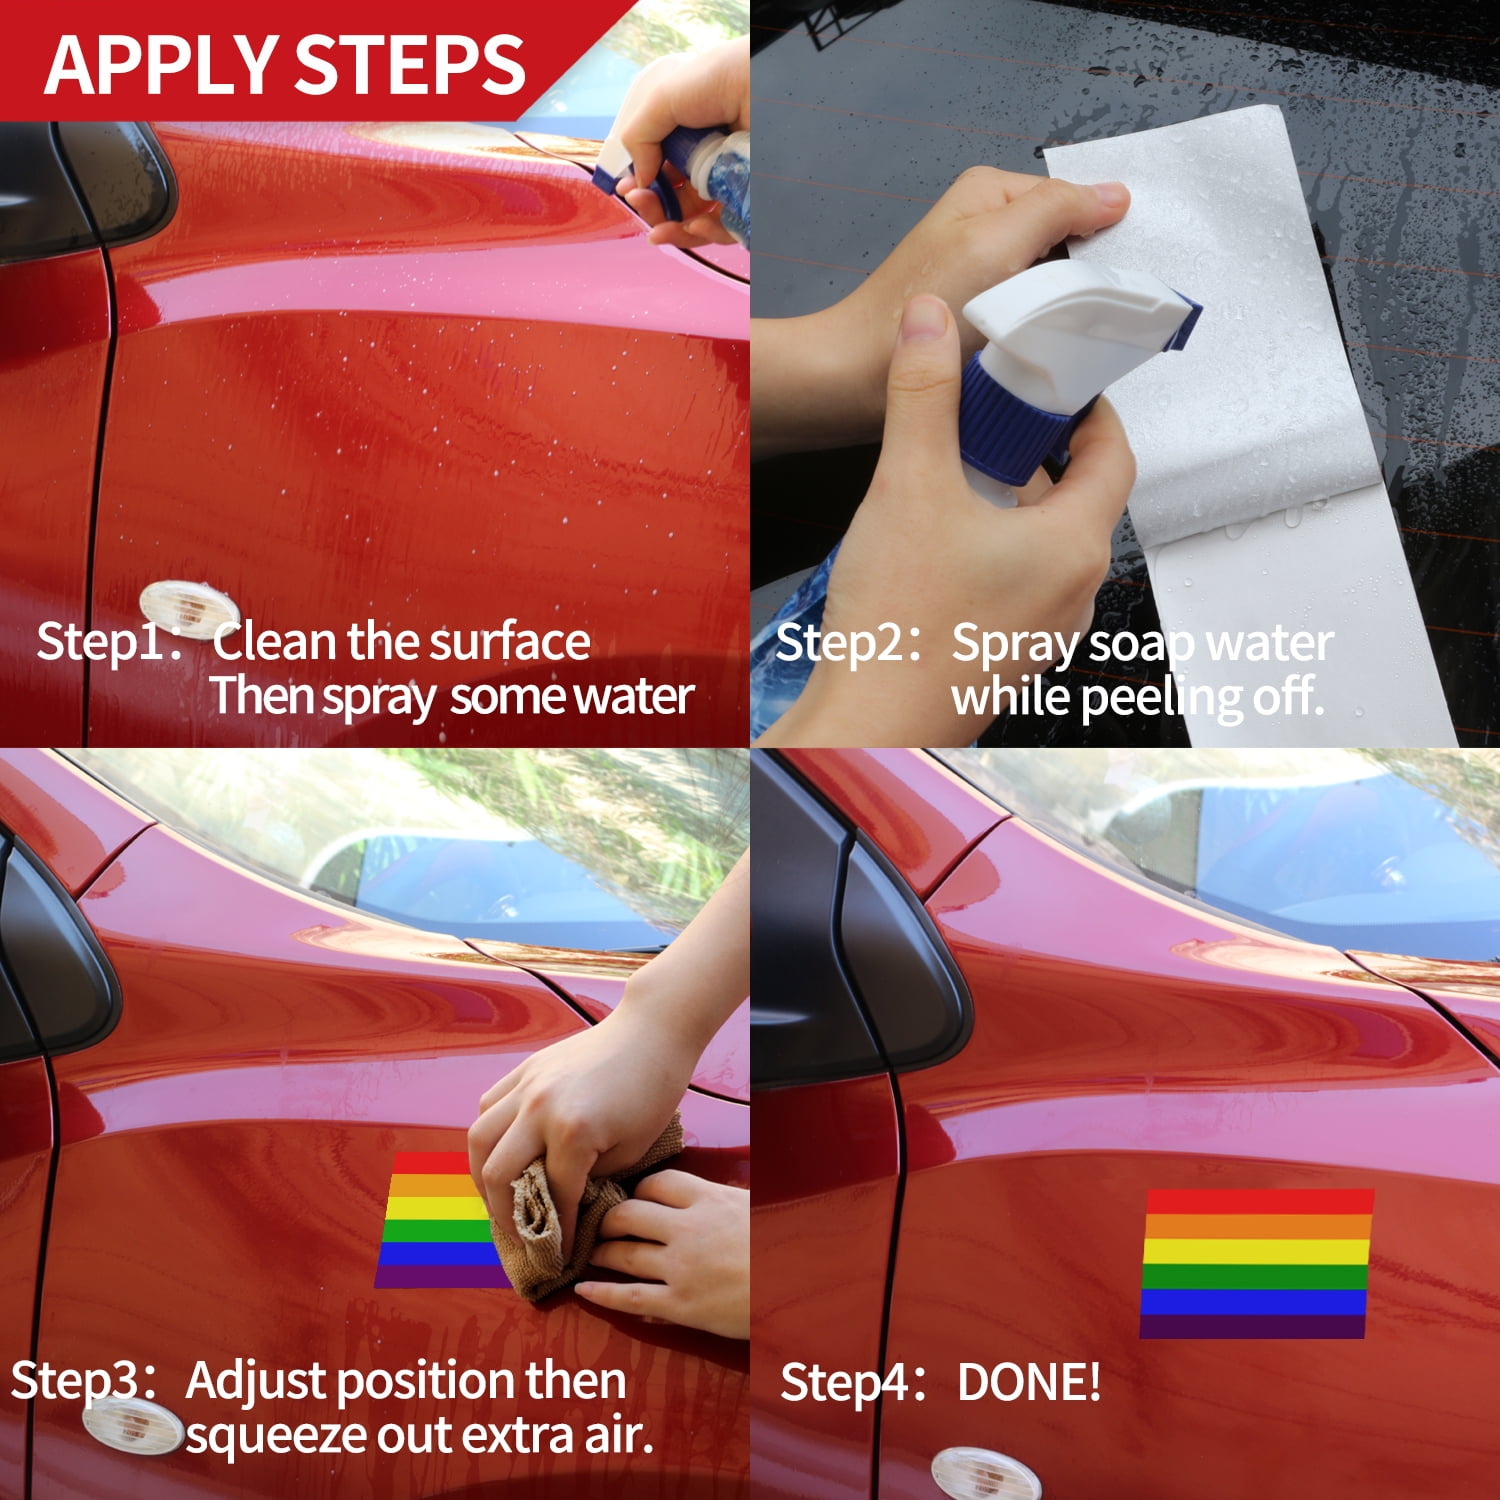 Gay USA Rainbow Flag car bumper sticker decal 5" x 3" 